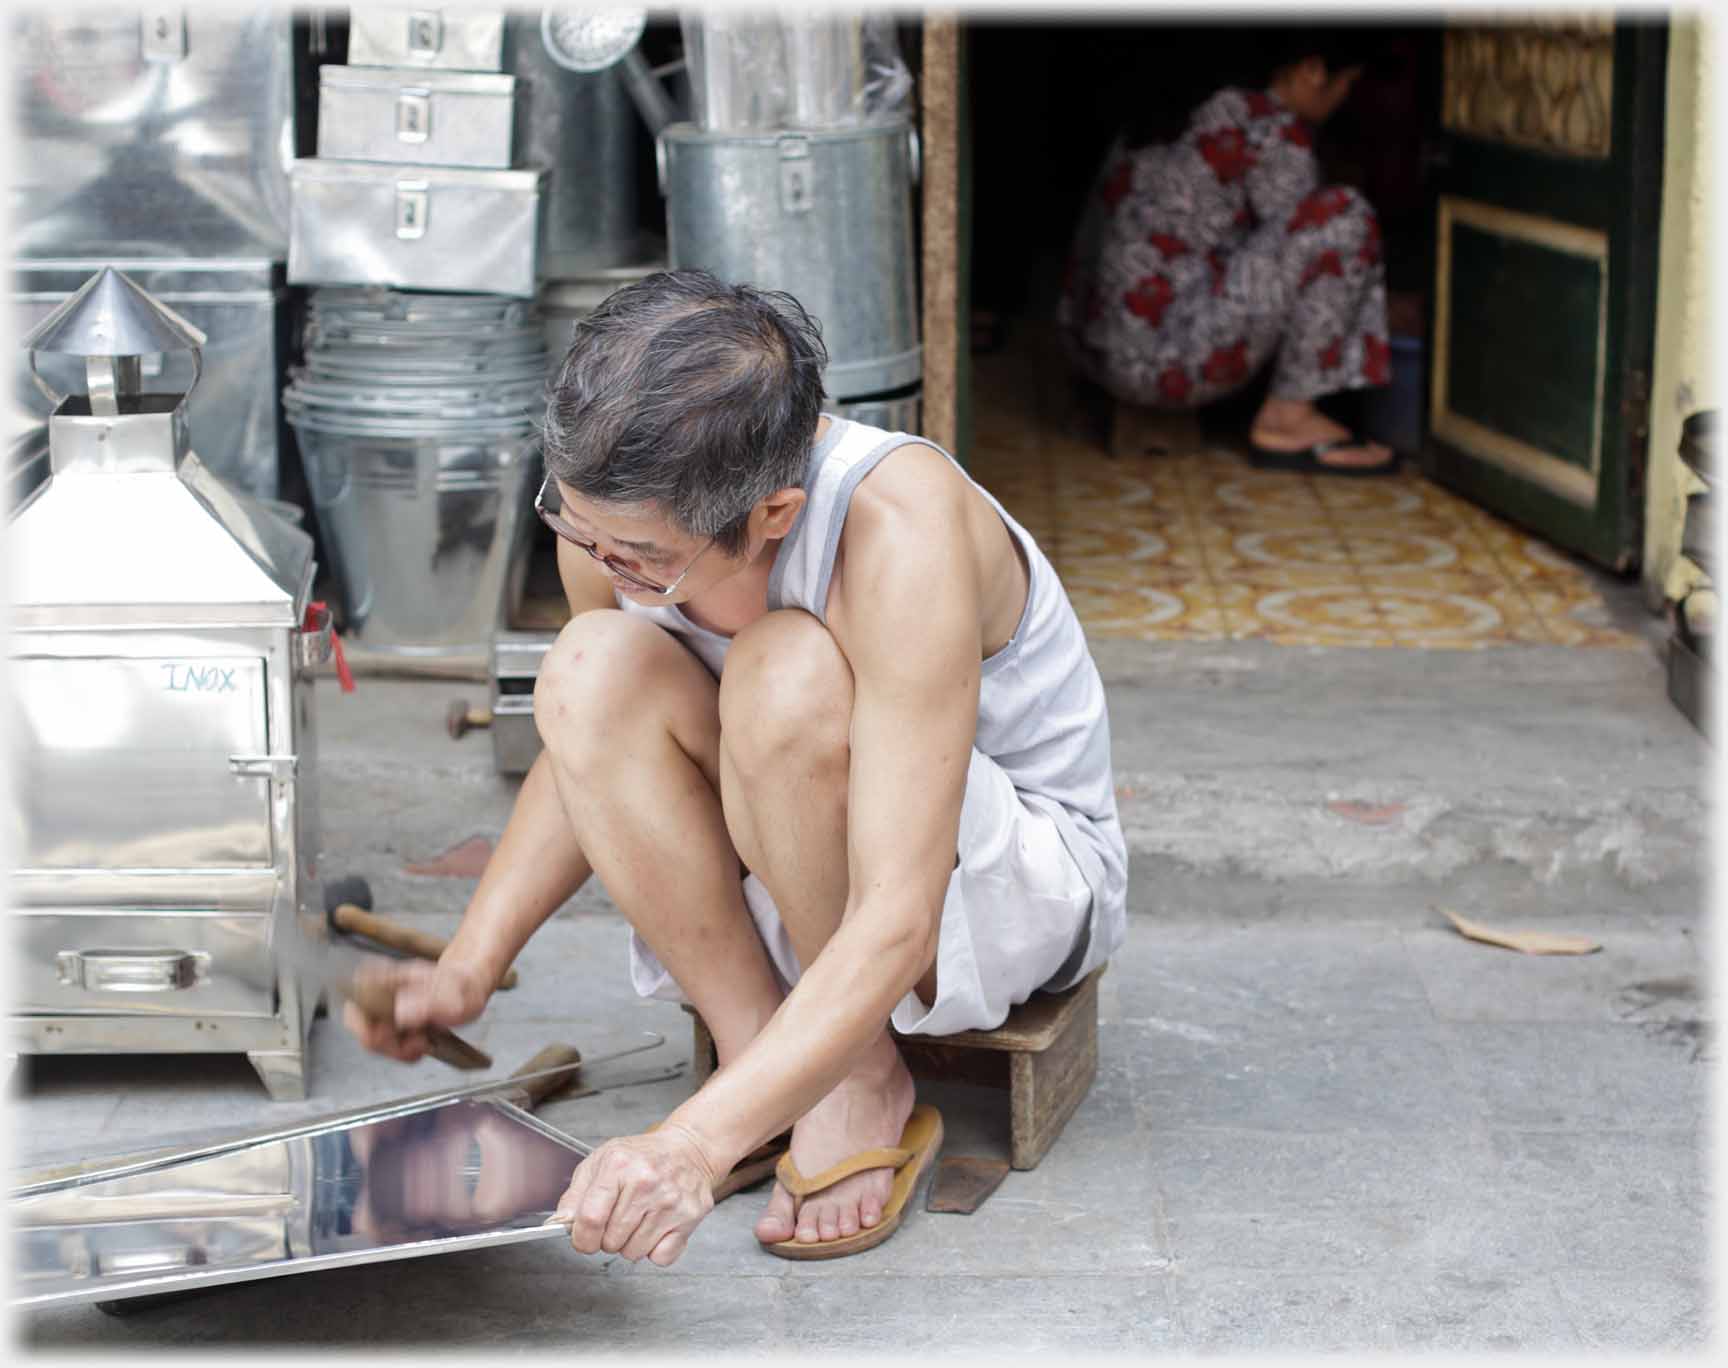 Man squatting hammering tin, woman within squatting.